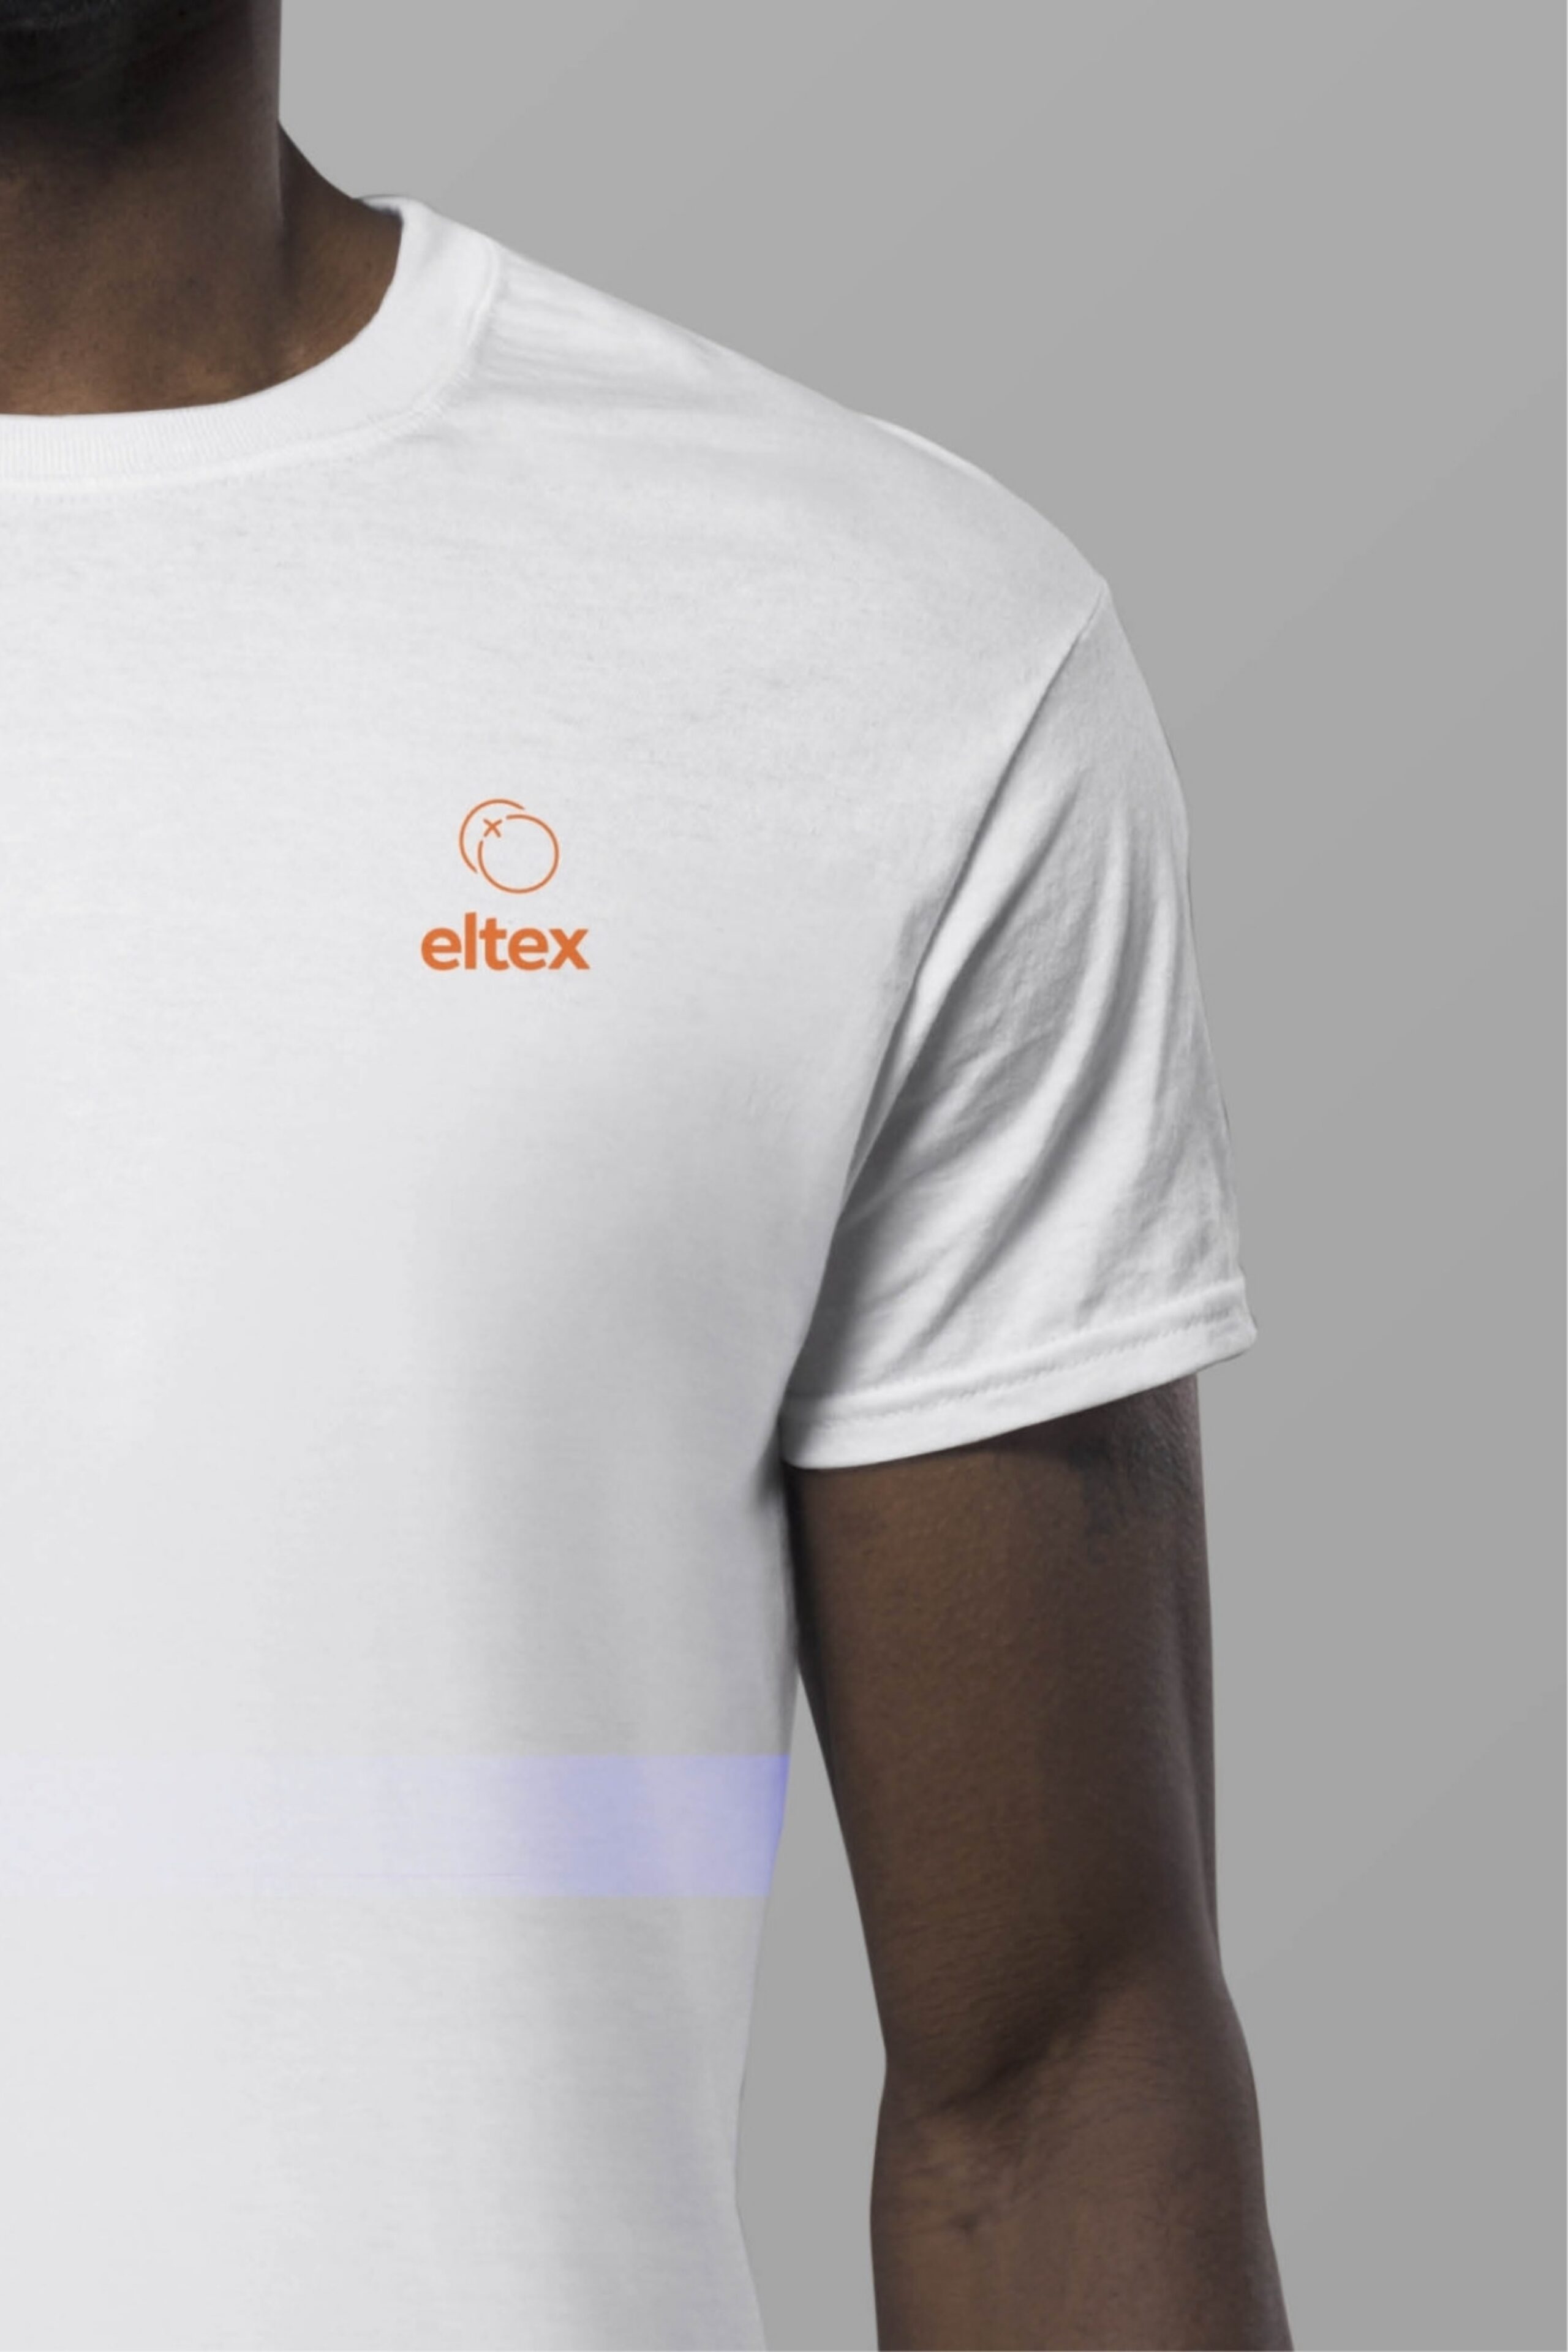 ELTEX Concept WEB 01 022 1804x0